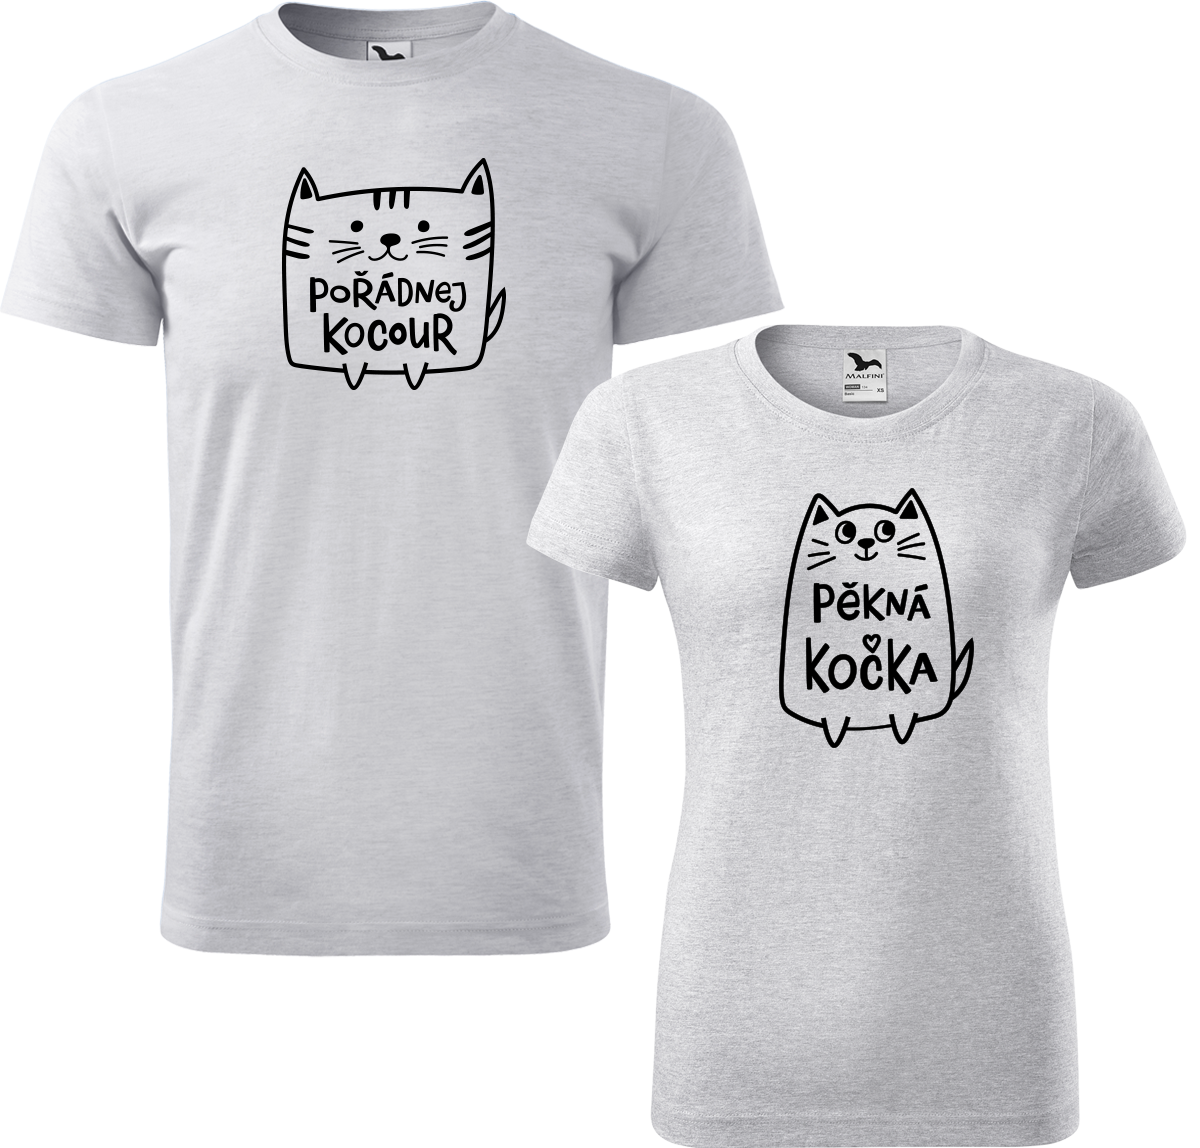 Trička pro páry - Pořádnej kocour a pěkná kočka Barva: Světle šedý melír (03), Velikost dámské tričko: 2XL, Velikost pánské tričko: M